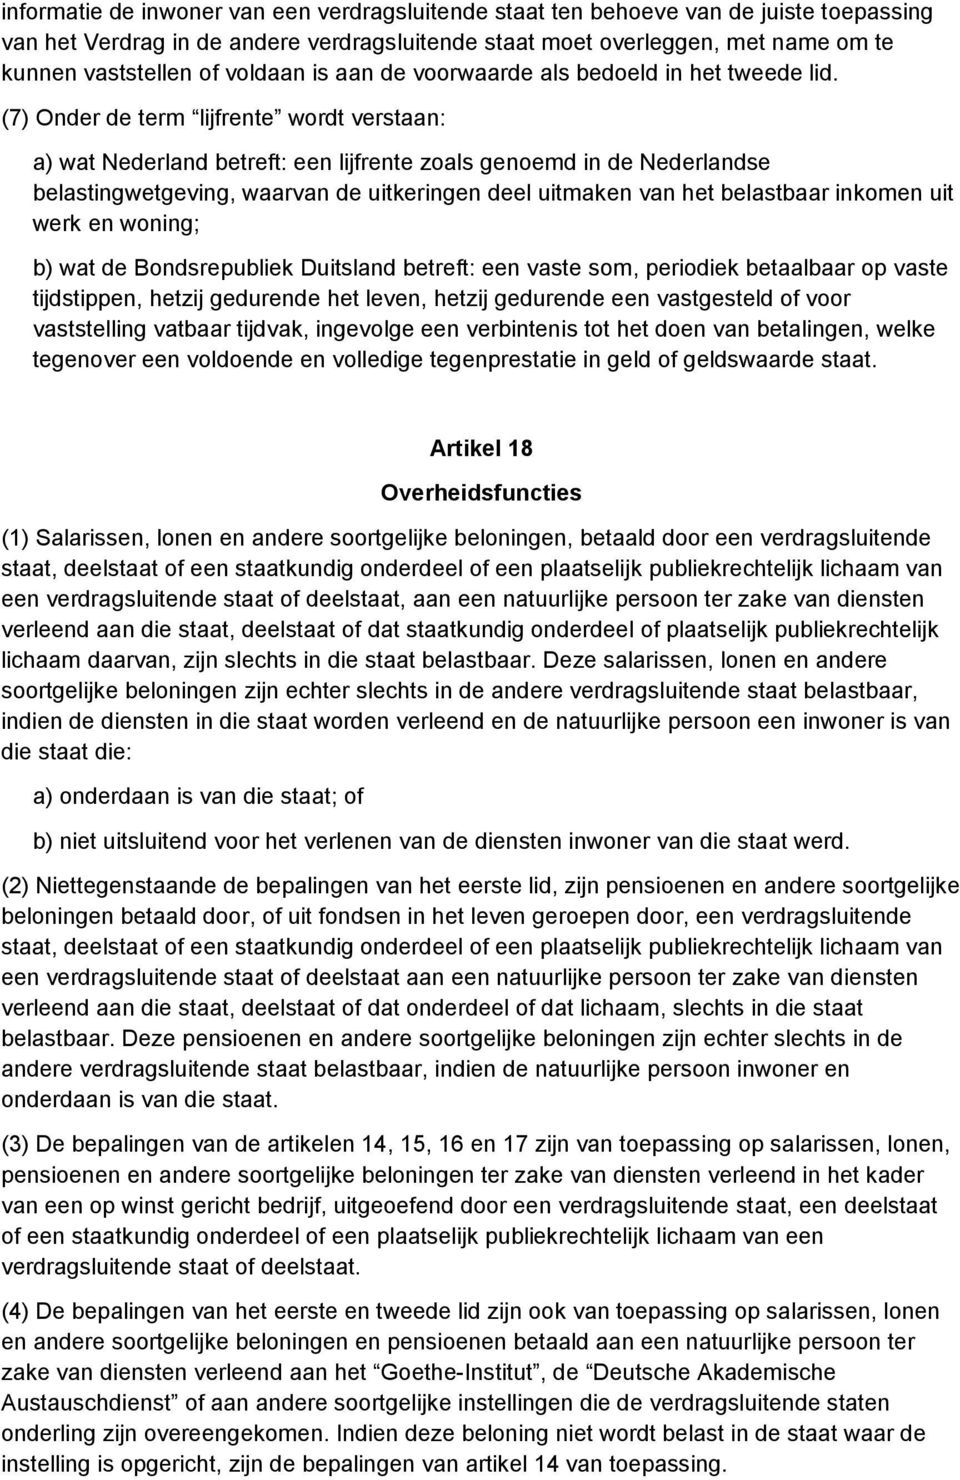 (7) Onder de term lijfrente wordt verstaan: a) wat Nederland betreft: een lijfrente zoals genoemd in de Nederlandse belastingwetgeving, waarvan de uitkeringen deel uitmaken van het belastbaar inkomen